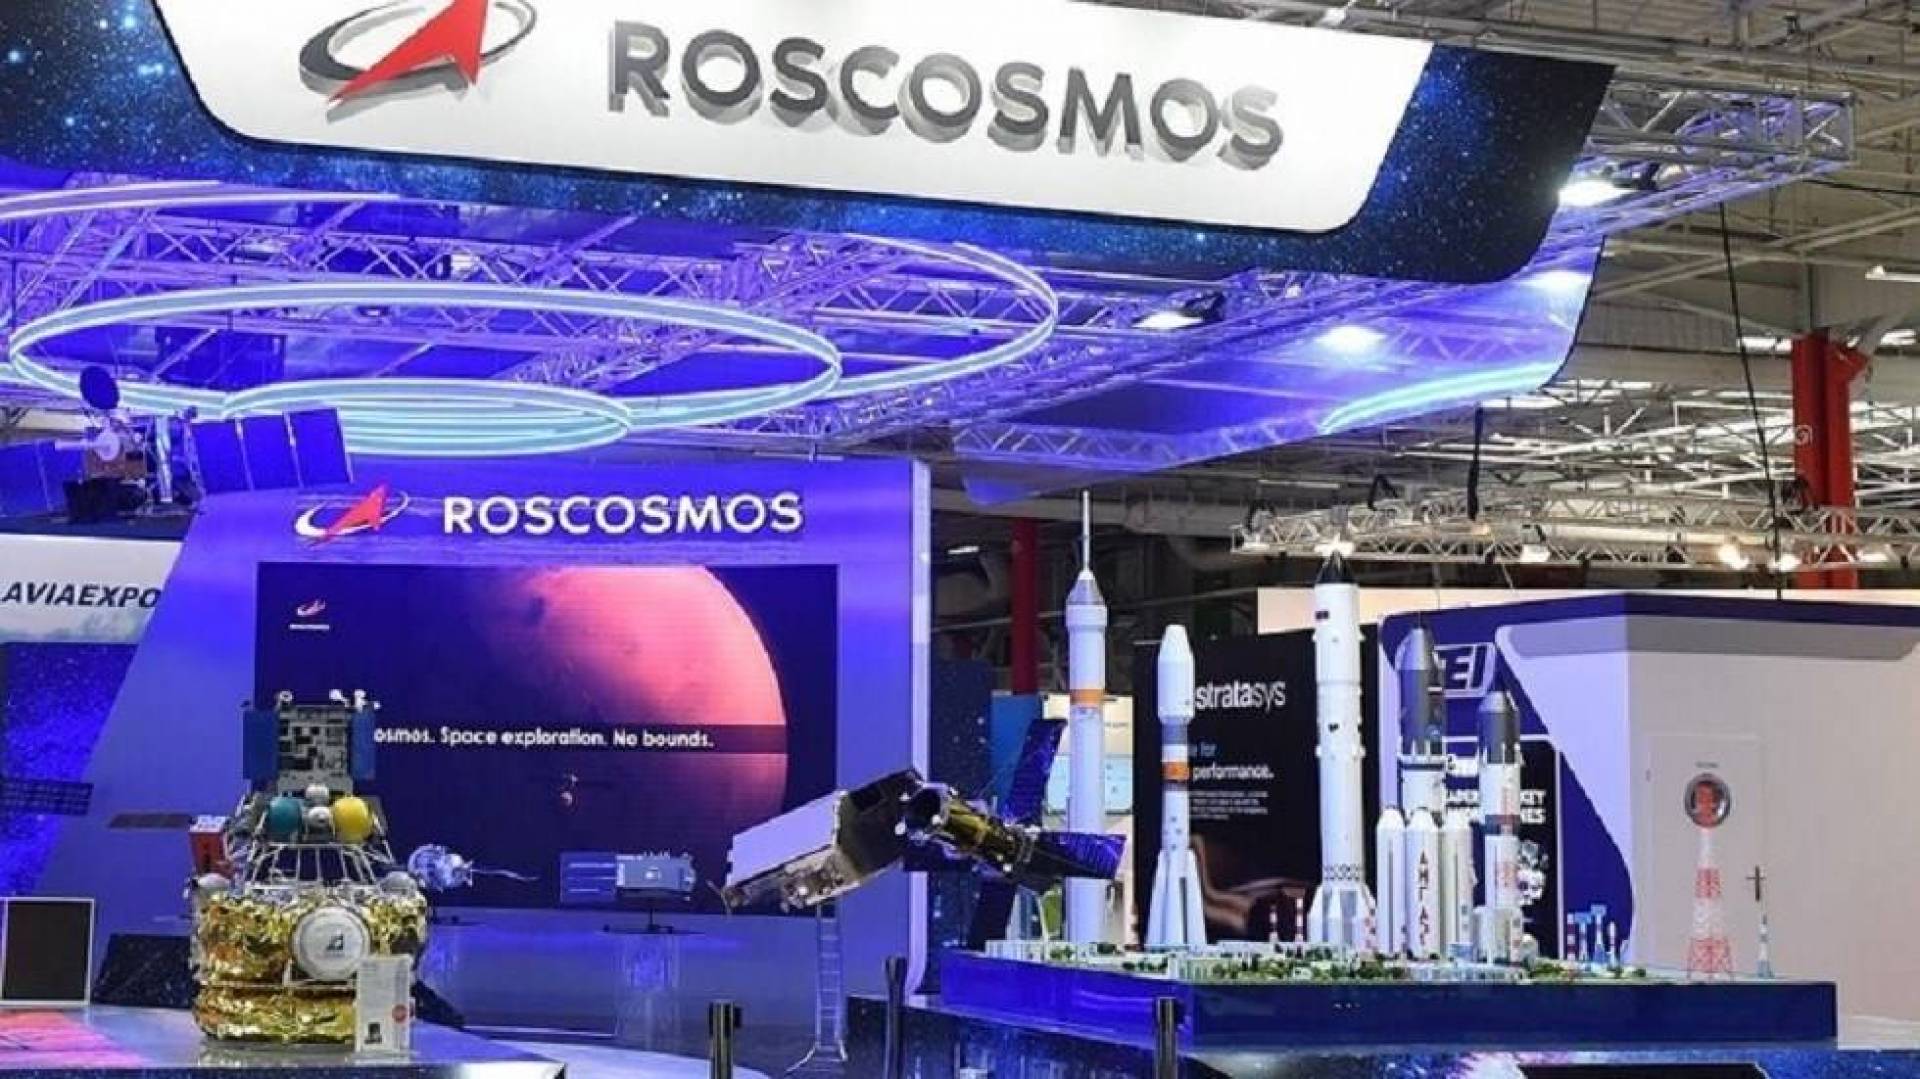 مدير روس كوسموس يؤكد السعي لإنتاج قمر صناعي كل يوم